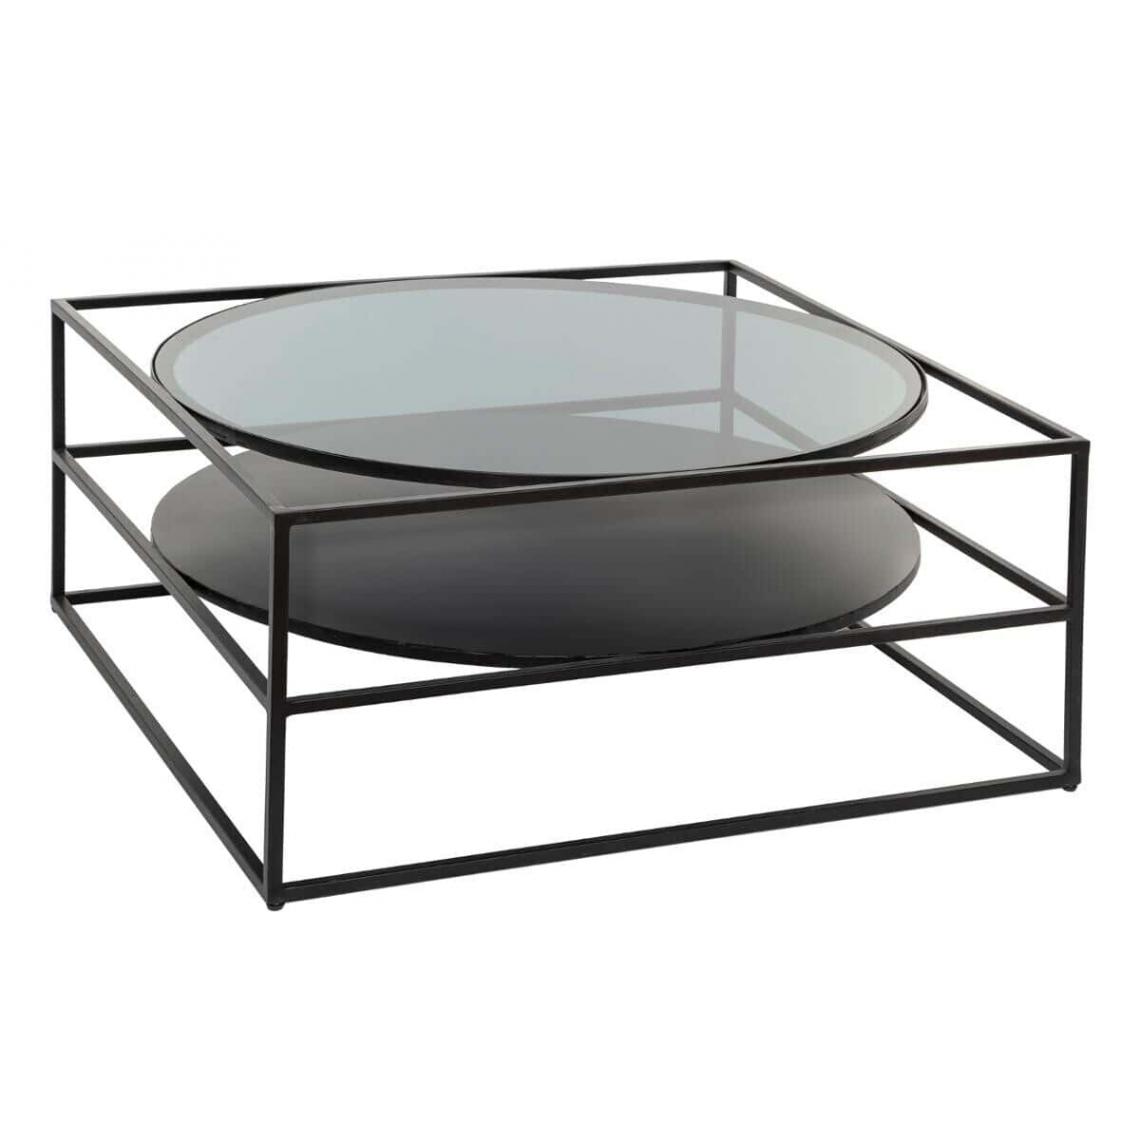 Pegane - Table basse en fer et verre trempé coloris noir - Longueur 89,5 x Profondeur 89,5 x Hauteur 41 cm - Tables basses